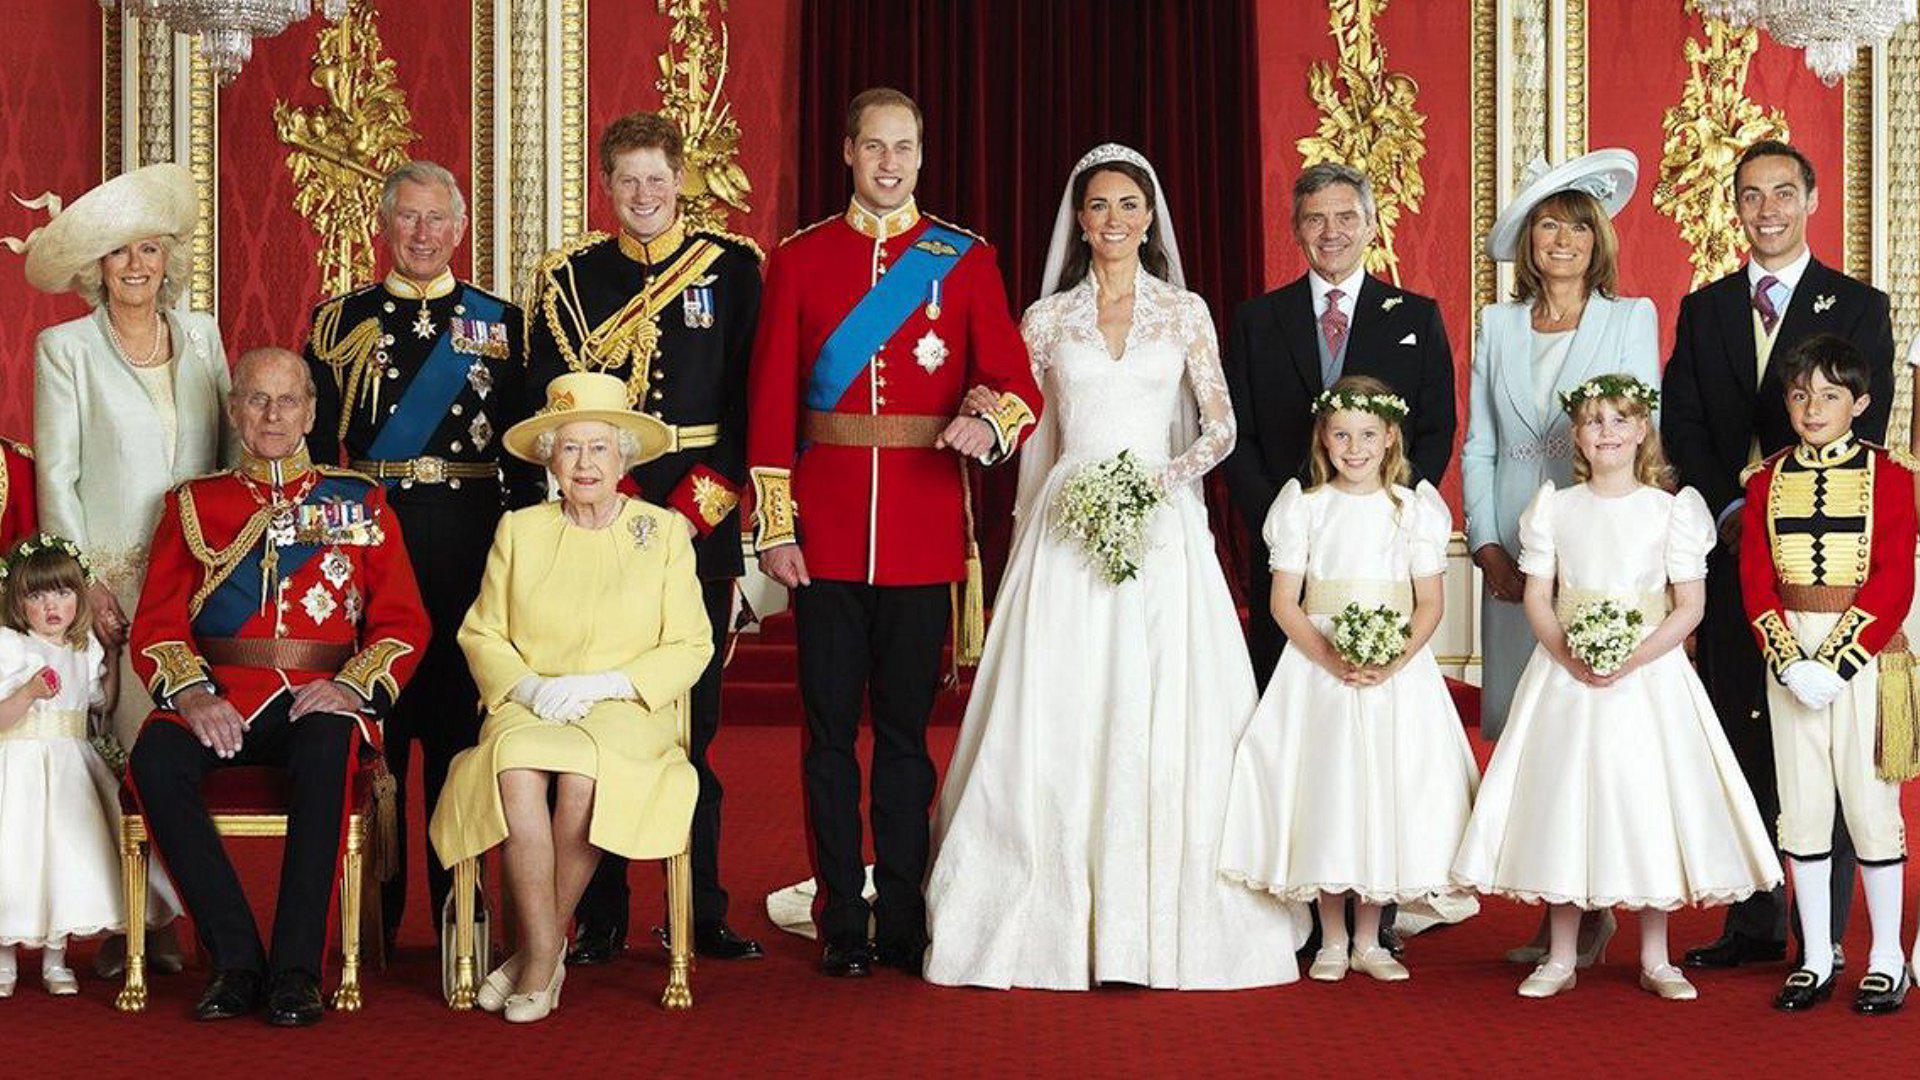 Ποιος είναι ο πιο κοντός στη βασιλική οικογένεια της Βρετανίας;